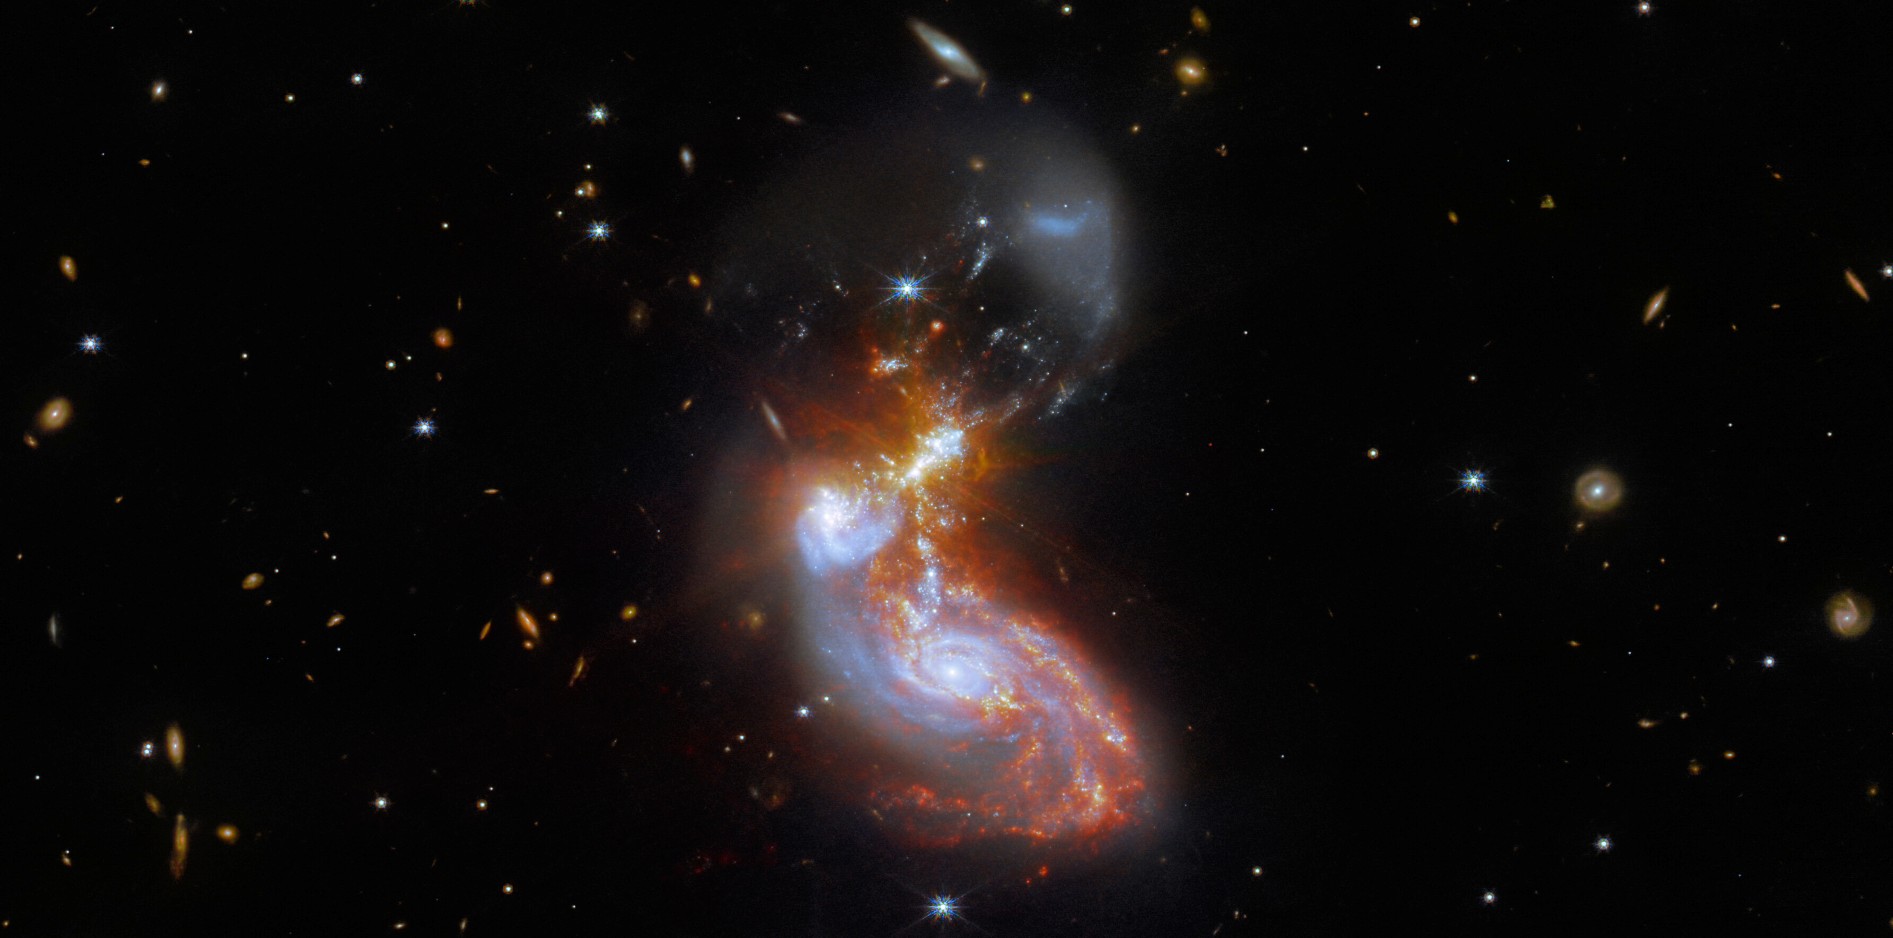 Brillante aux longueurs d'onde infrarouges, cette paire de galaxies en fusion se trouve à environ 500 millions d'années-lumière dans la constellation du Dauphin. La collision cosmique est vue sur un fond de galaxies encore plus lointaines. La fusion de galaxies elle-même s'étend sur environ 100 000 années-lumière dans cette image profonde du télescope spatial James-Webb. Les données d'image proviennent de la caméra en proche infrarouge (NIRCam) et de l'instrument pour l'infrarouge moyen (Miri) de Webb. © ESA Webb, Nasa CSA, L. Armus, A. Evans